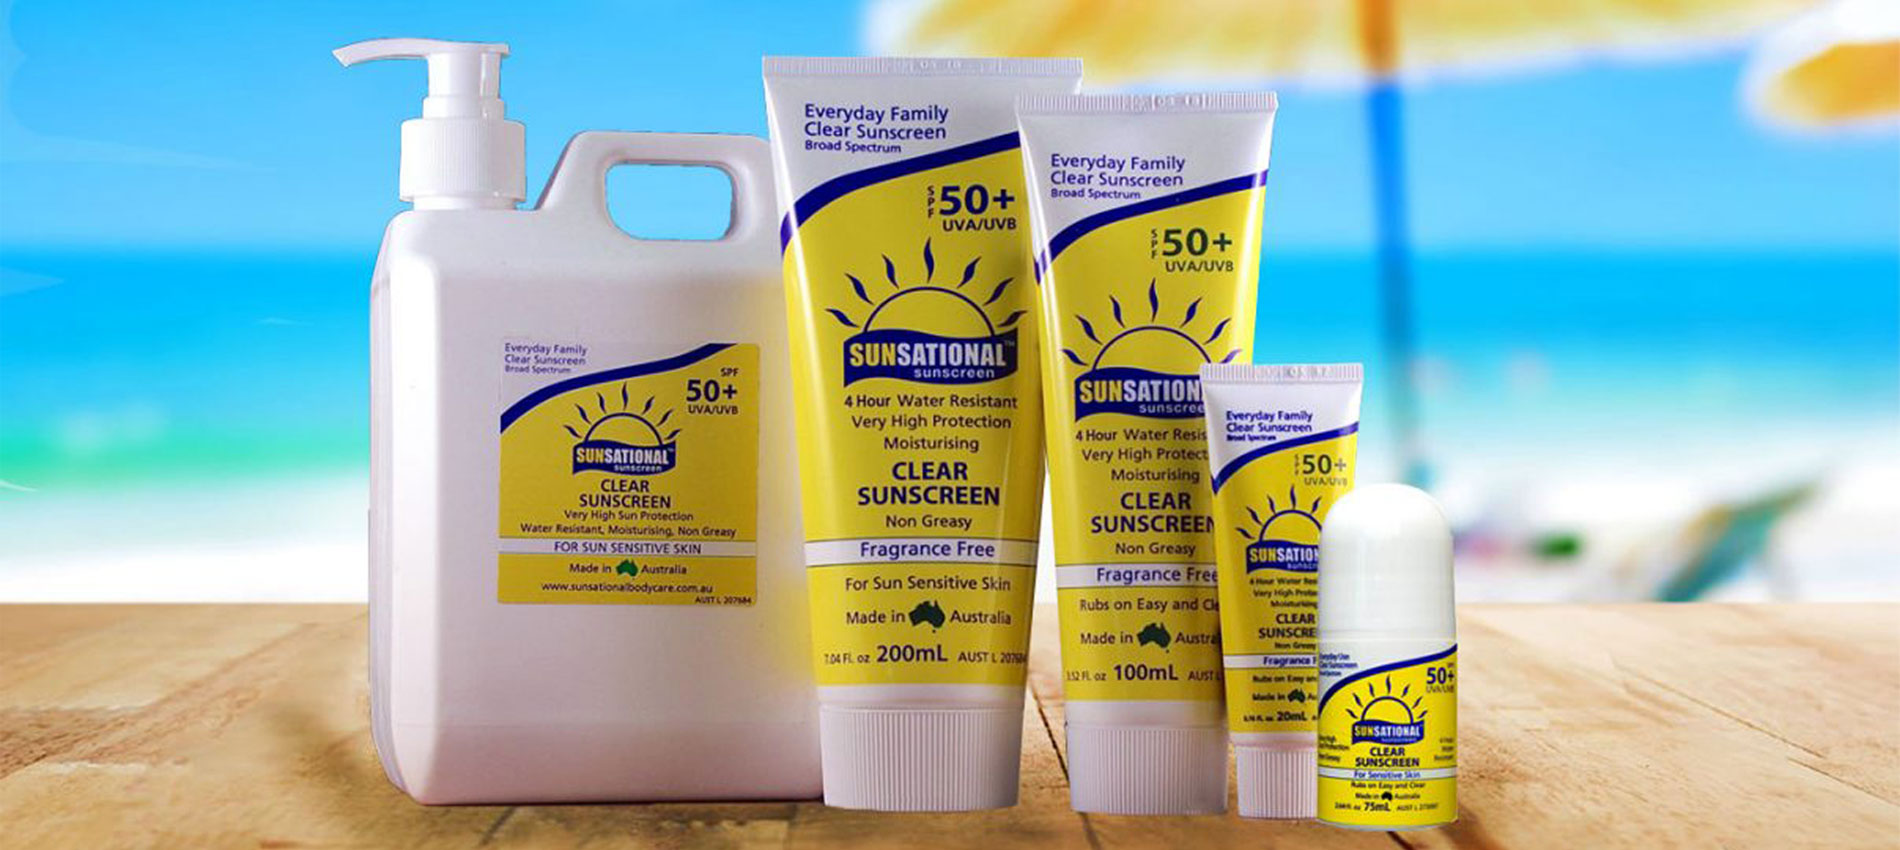 Australian Sunscreen, Sunsational SPF Sunscreens, Sun Cream, Sun Lotion, Sun Care, Suncare, Sun Protection, Sun Block, Sunblock, Australian Owned & Made